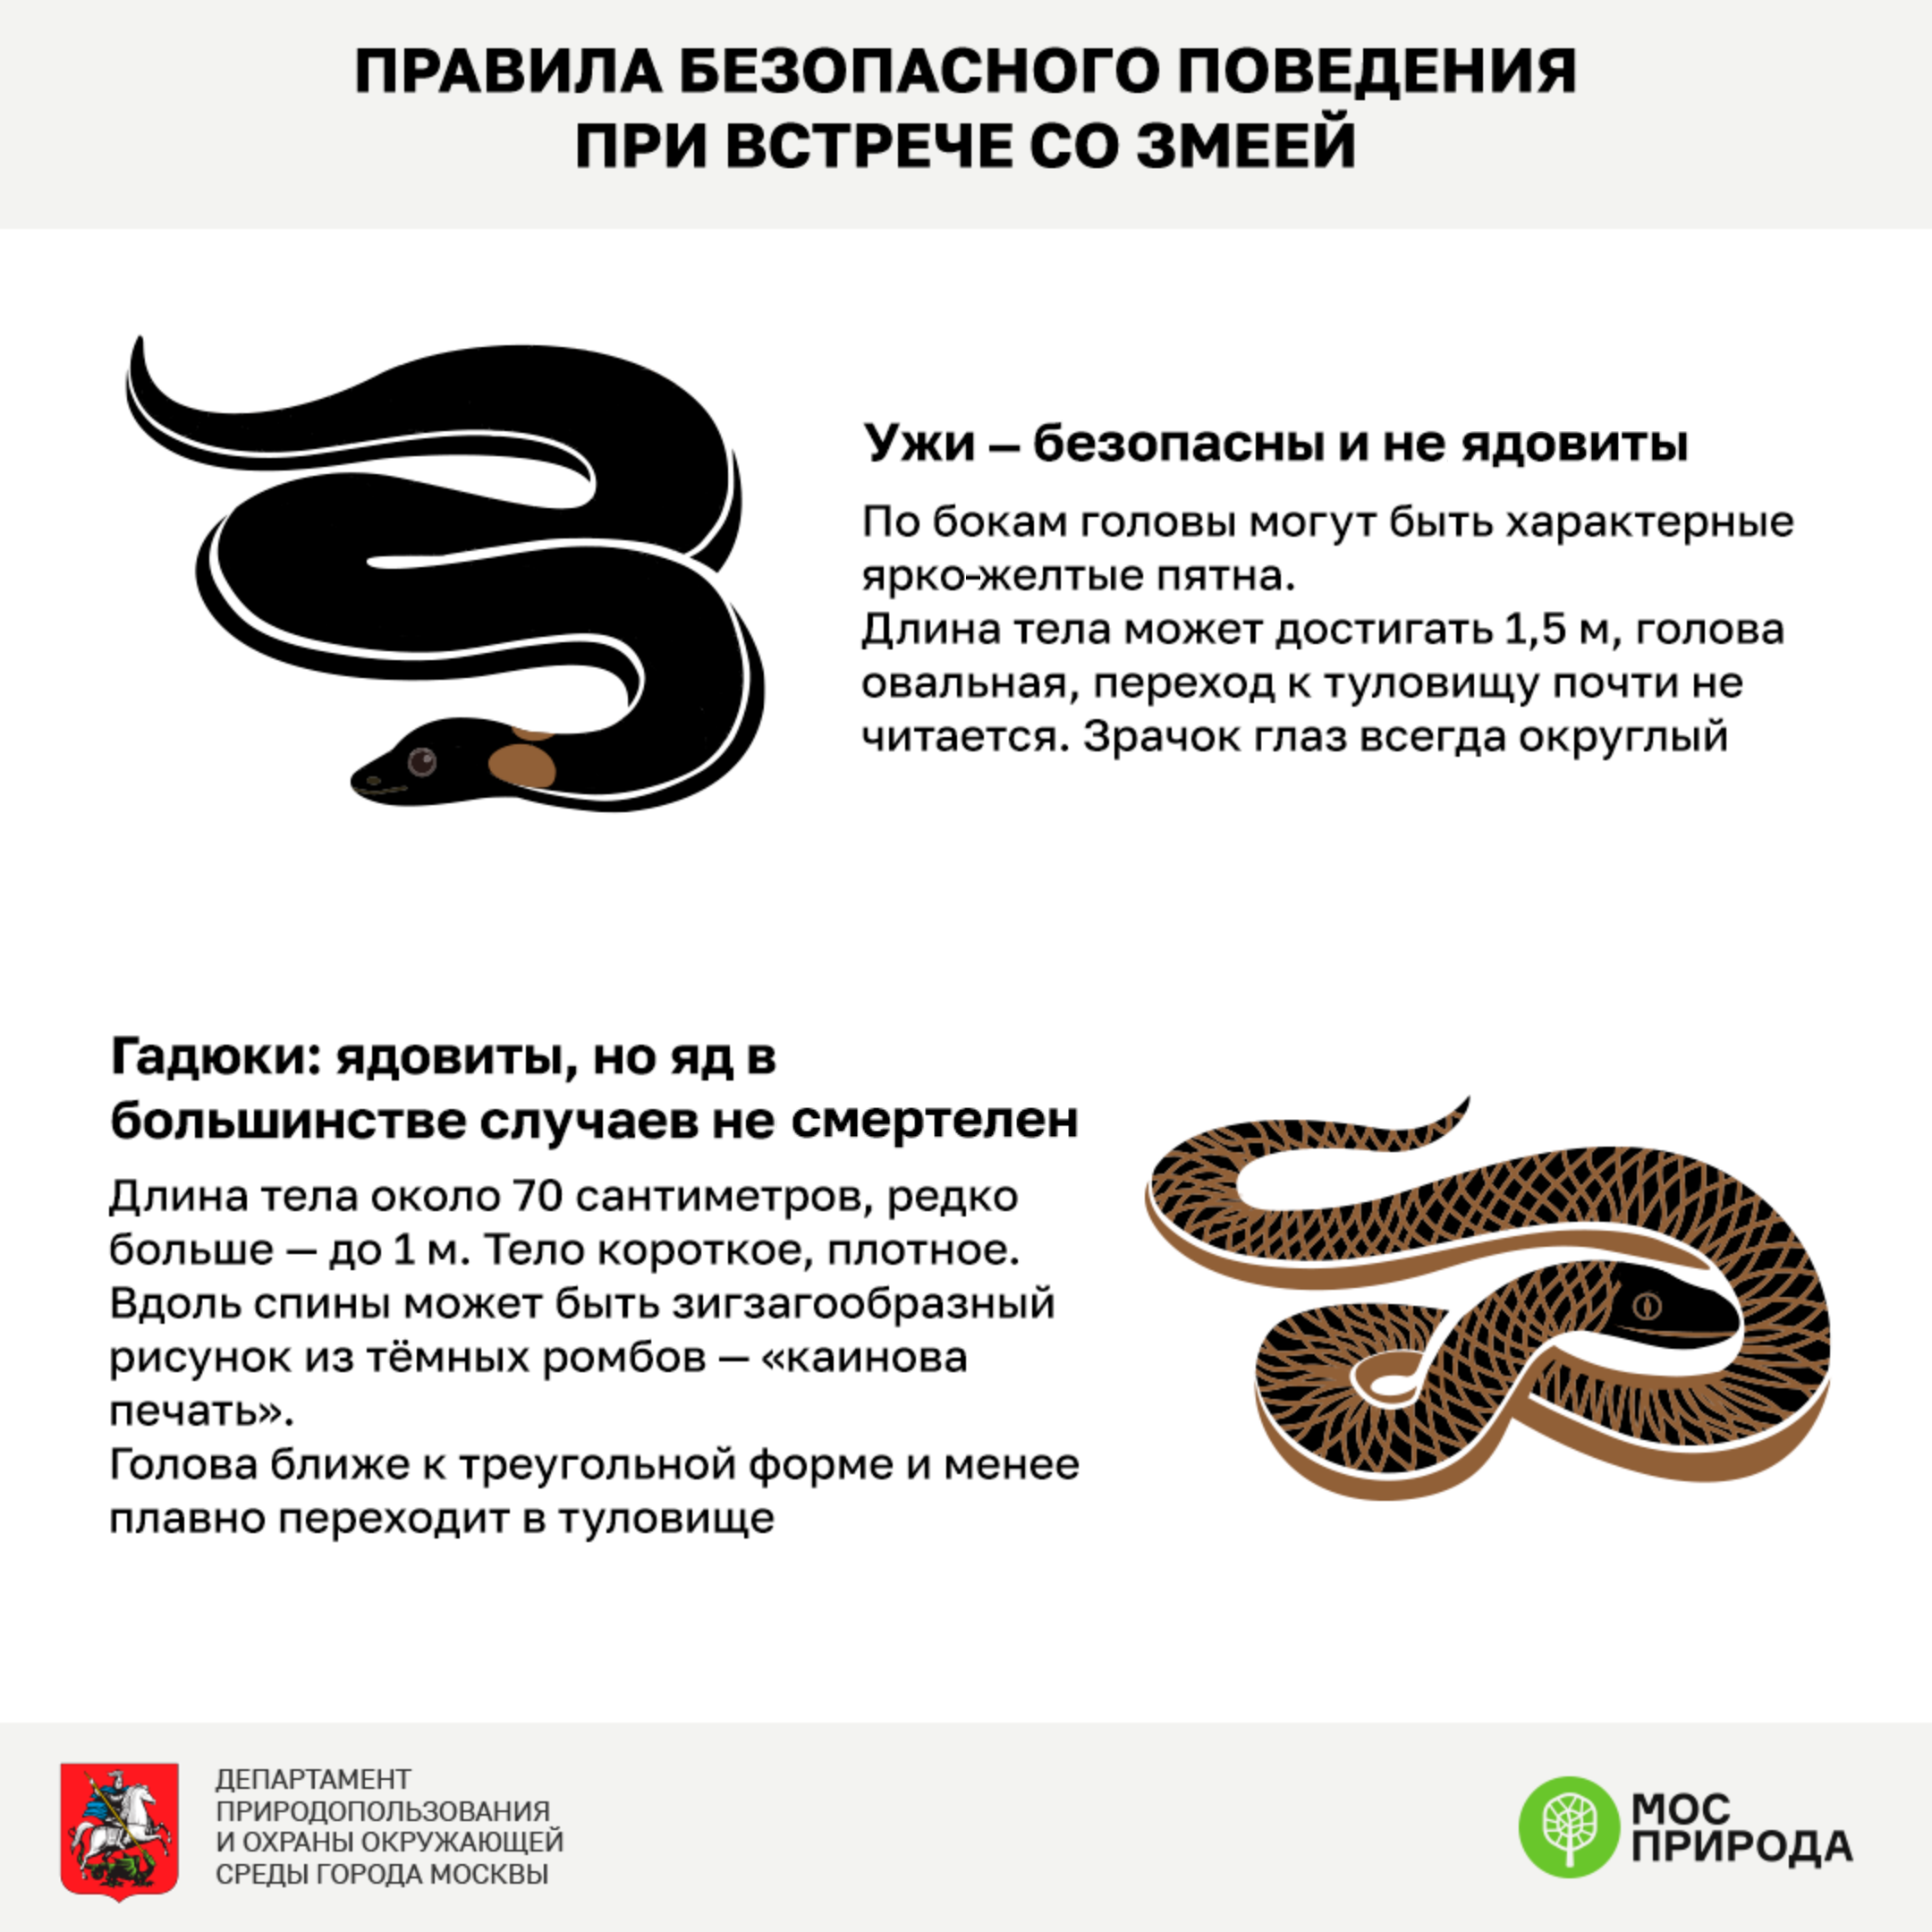 Зачем нужны змеи. Правила безопасности со змеями в лесу. Правила поведения при встрече со змеей. Безопасность при встрече со змеями. При встрече со змеей.